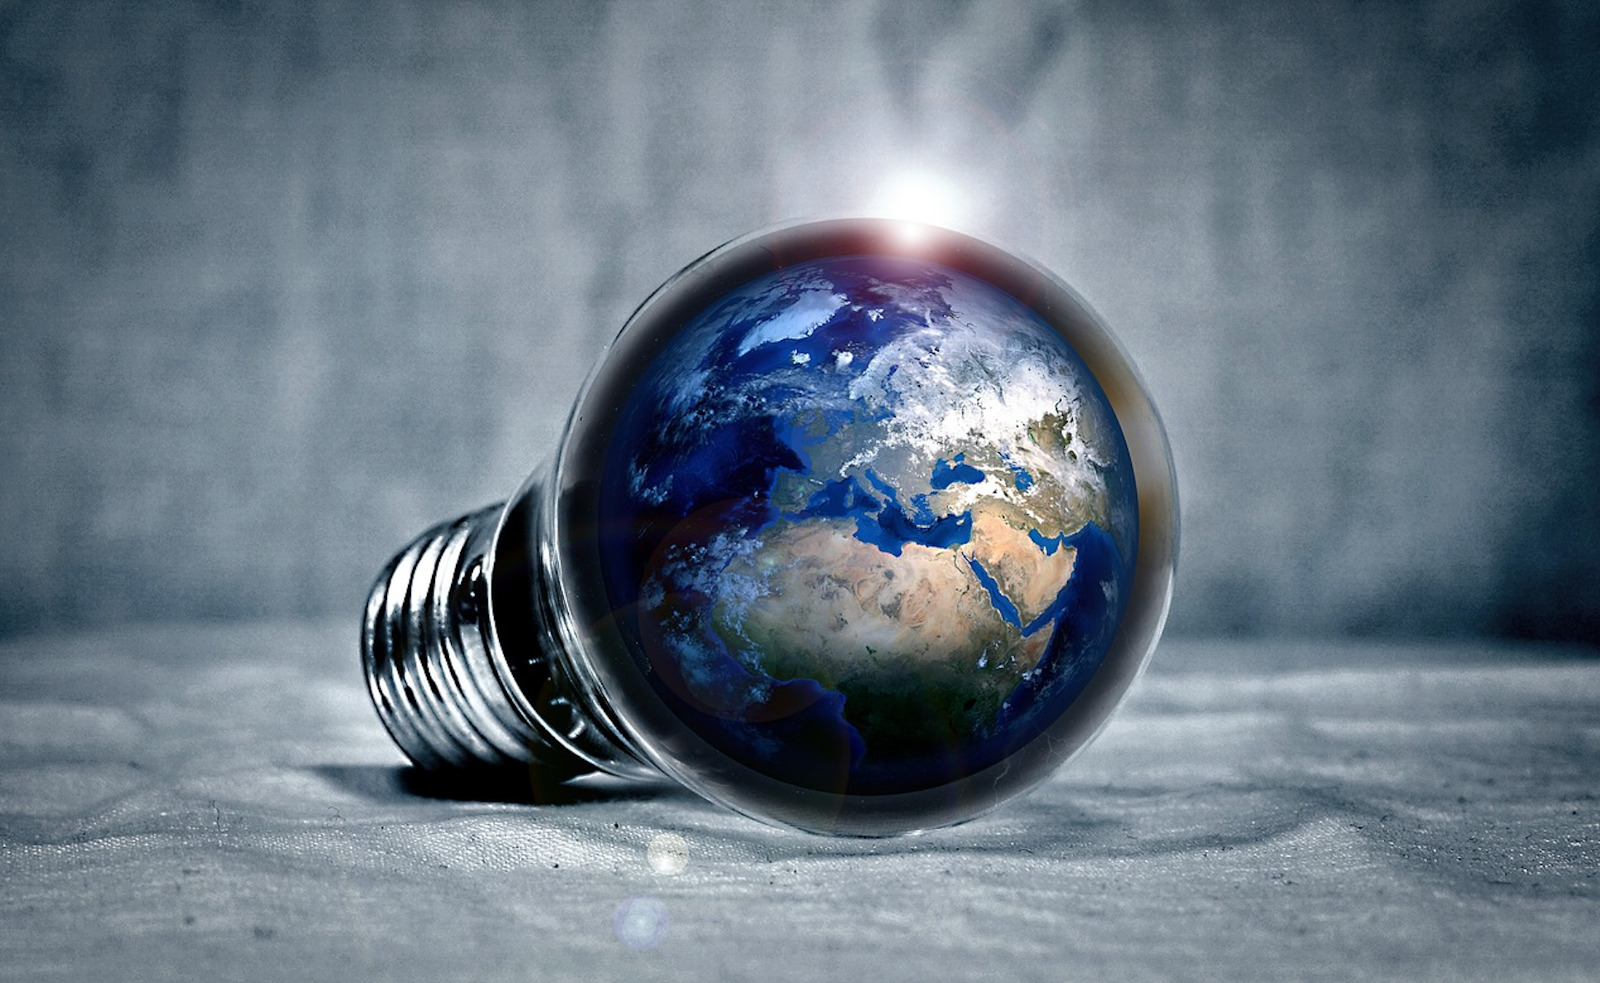 Foto de uma lâmpada sobre um tecido, com o globo terrestre por dentro.